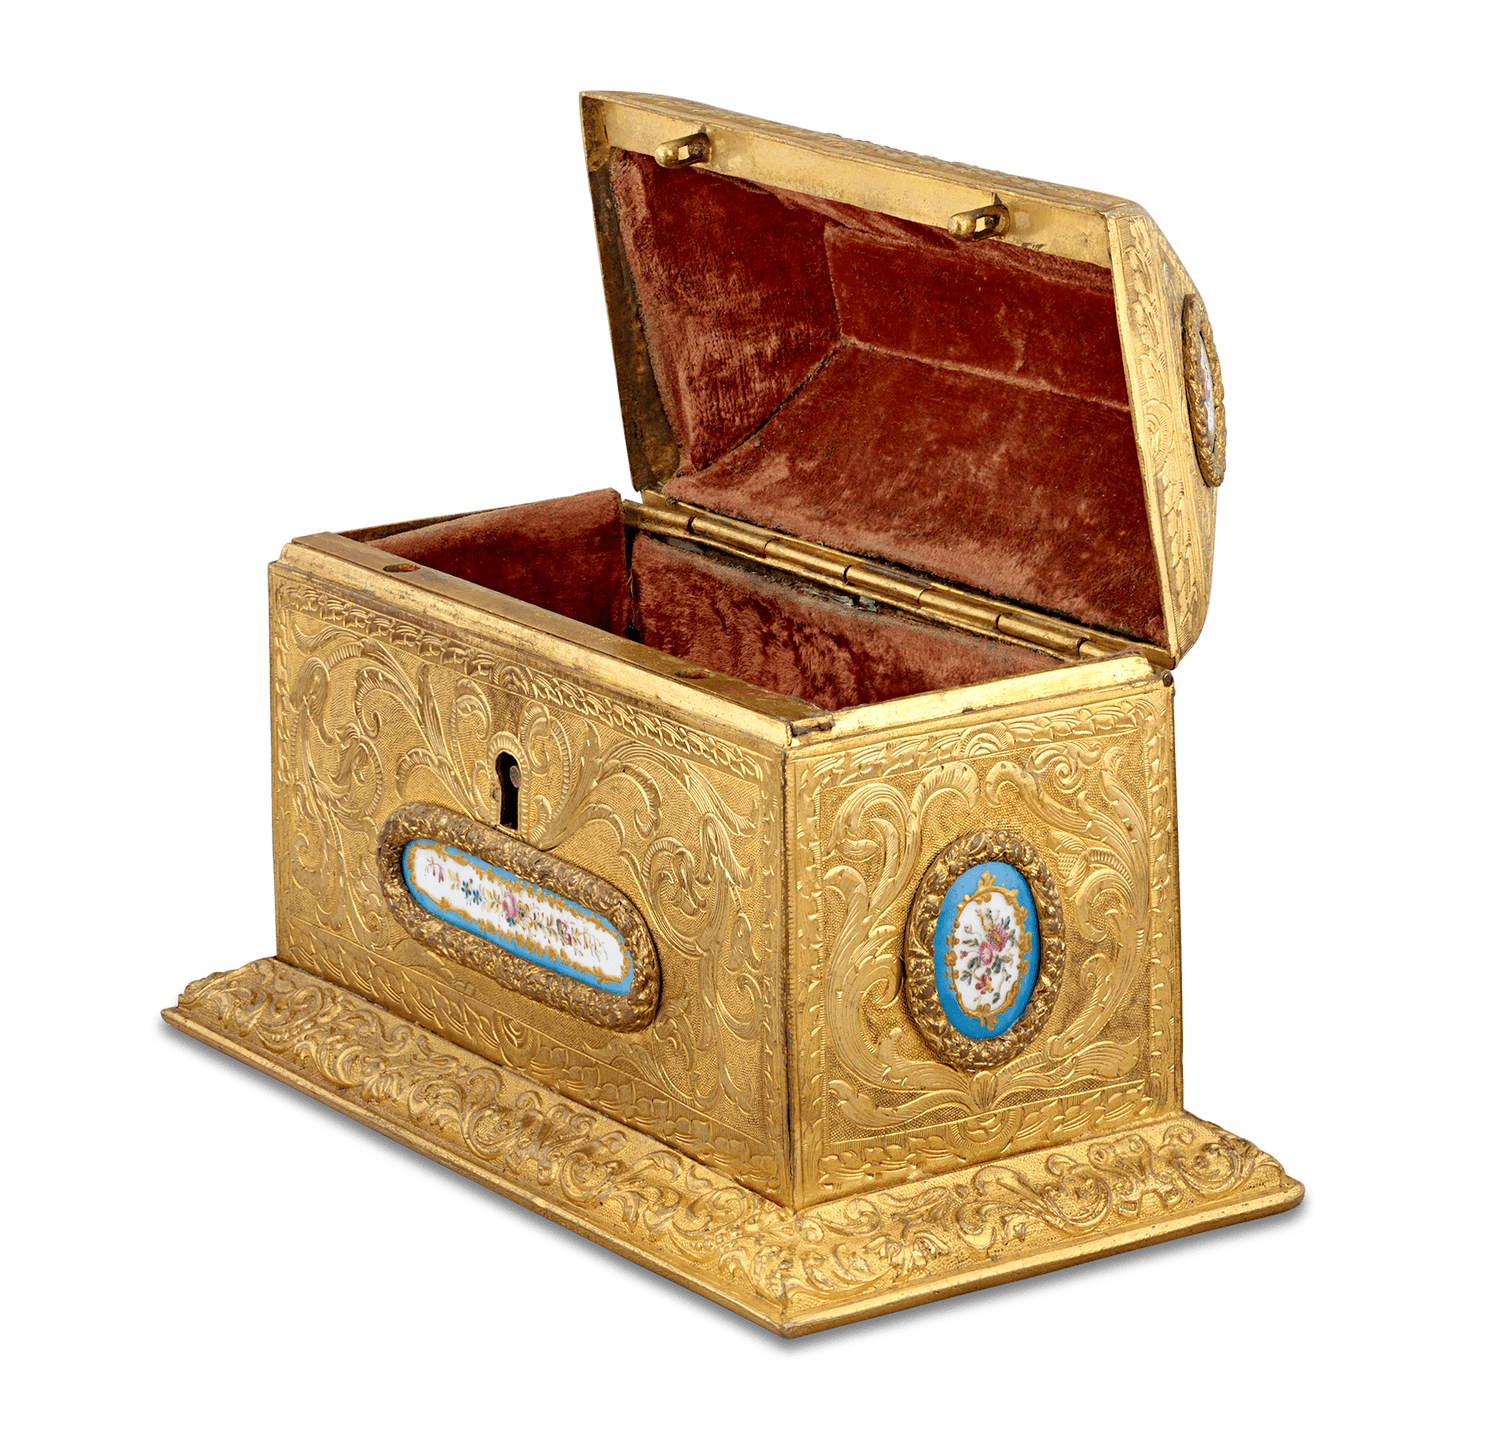 Sèvres Porcelain and Bronze Box